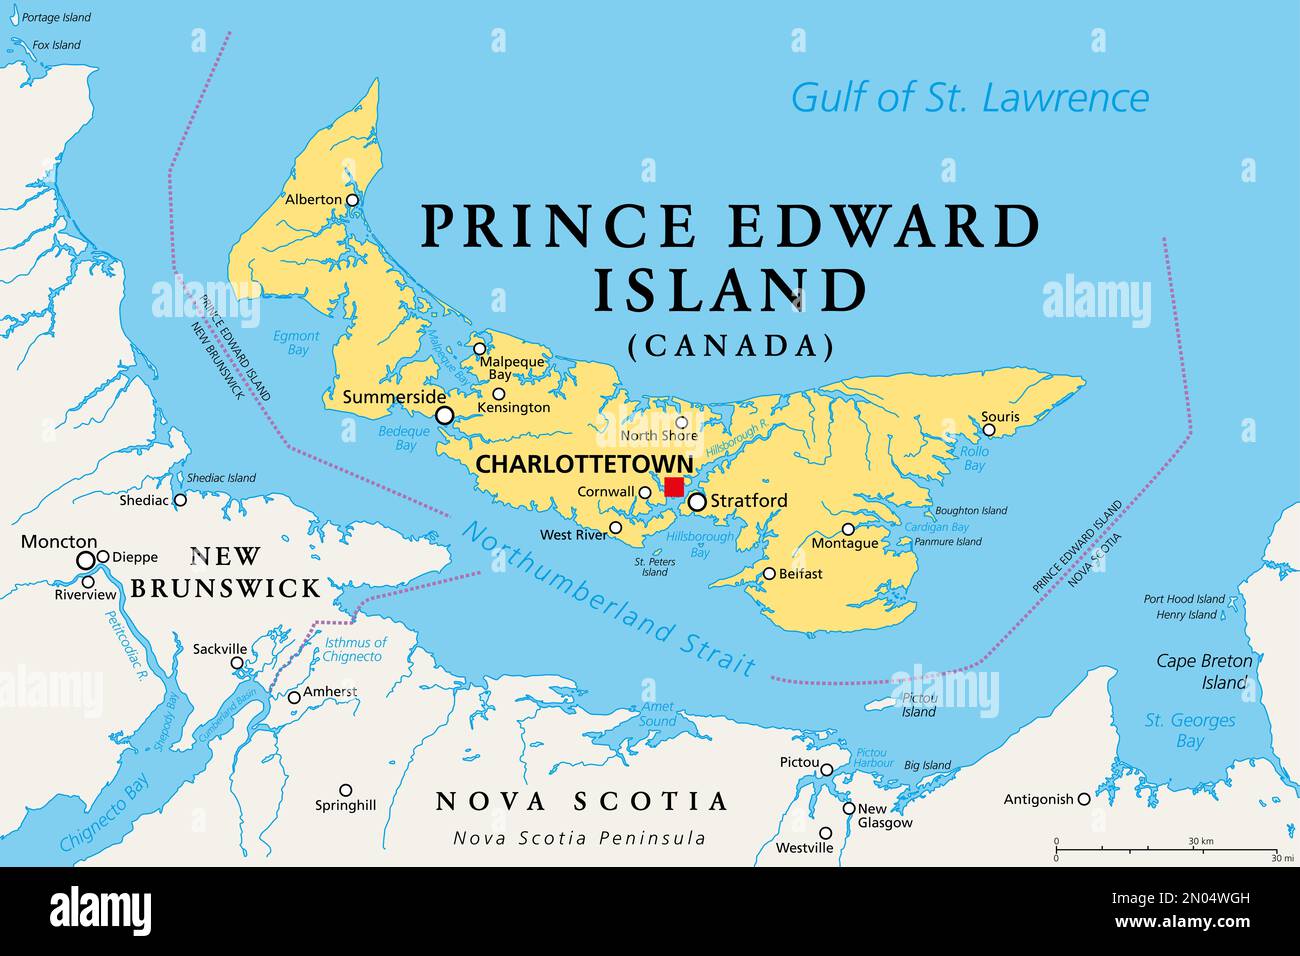 Prince Edward Island, Maritime und atlantische Provinz Kanadas, politische Karte. Die Insel, im Golf von St. Lawrence. Stockfoto